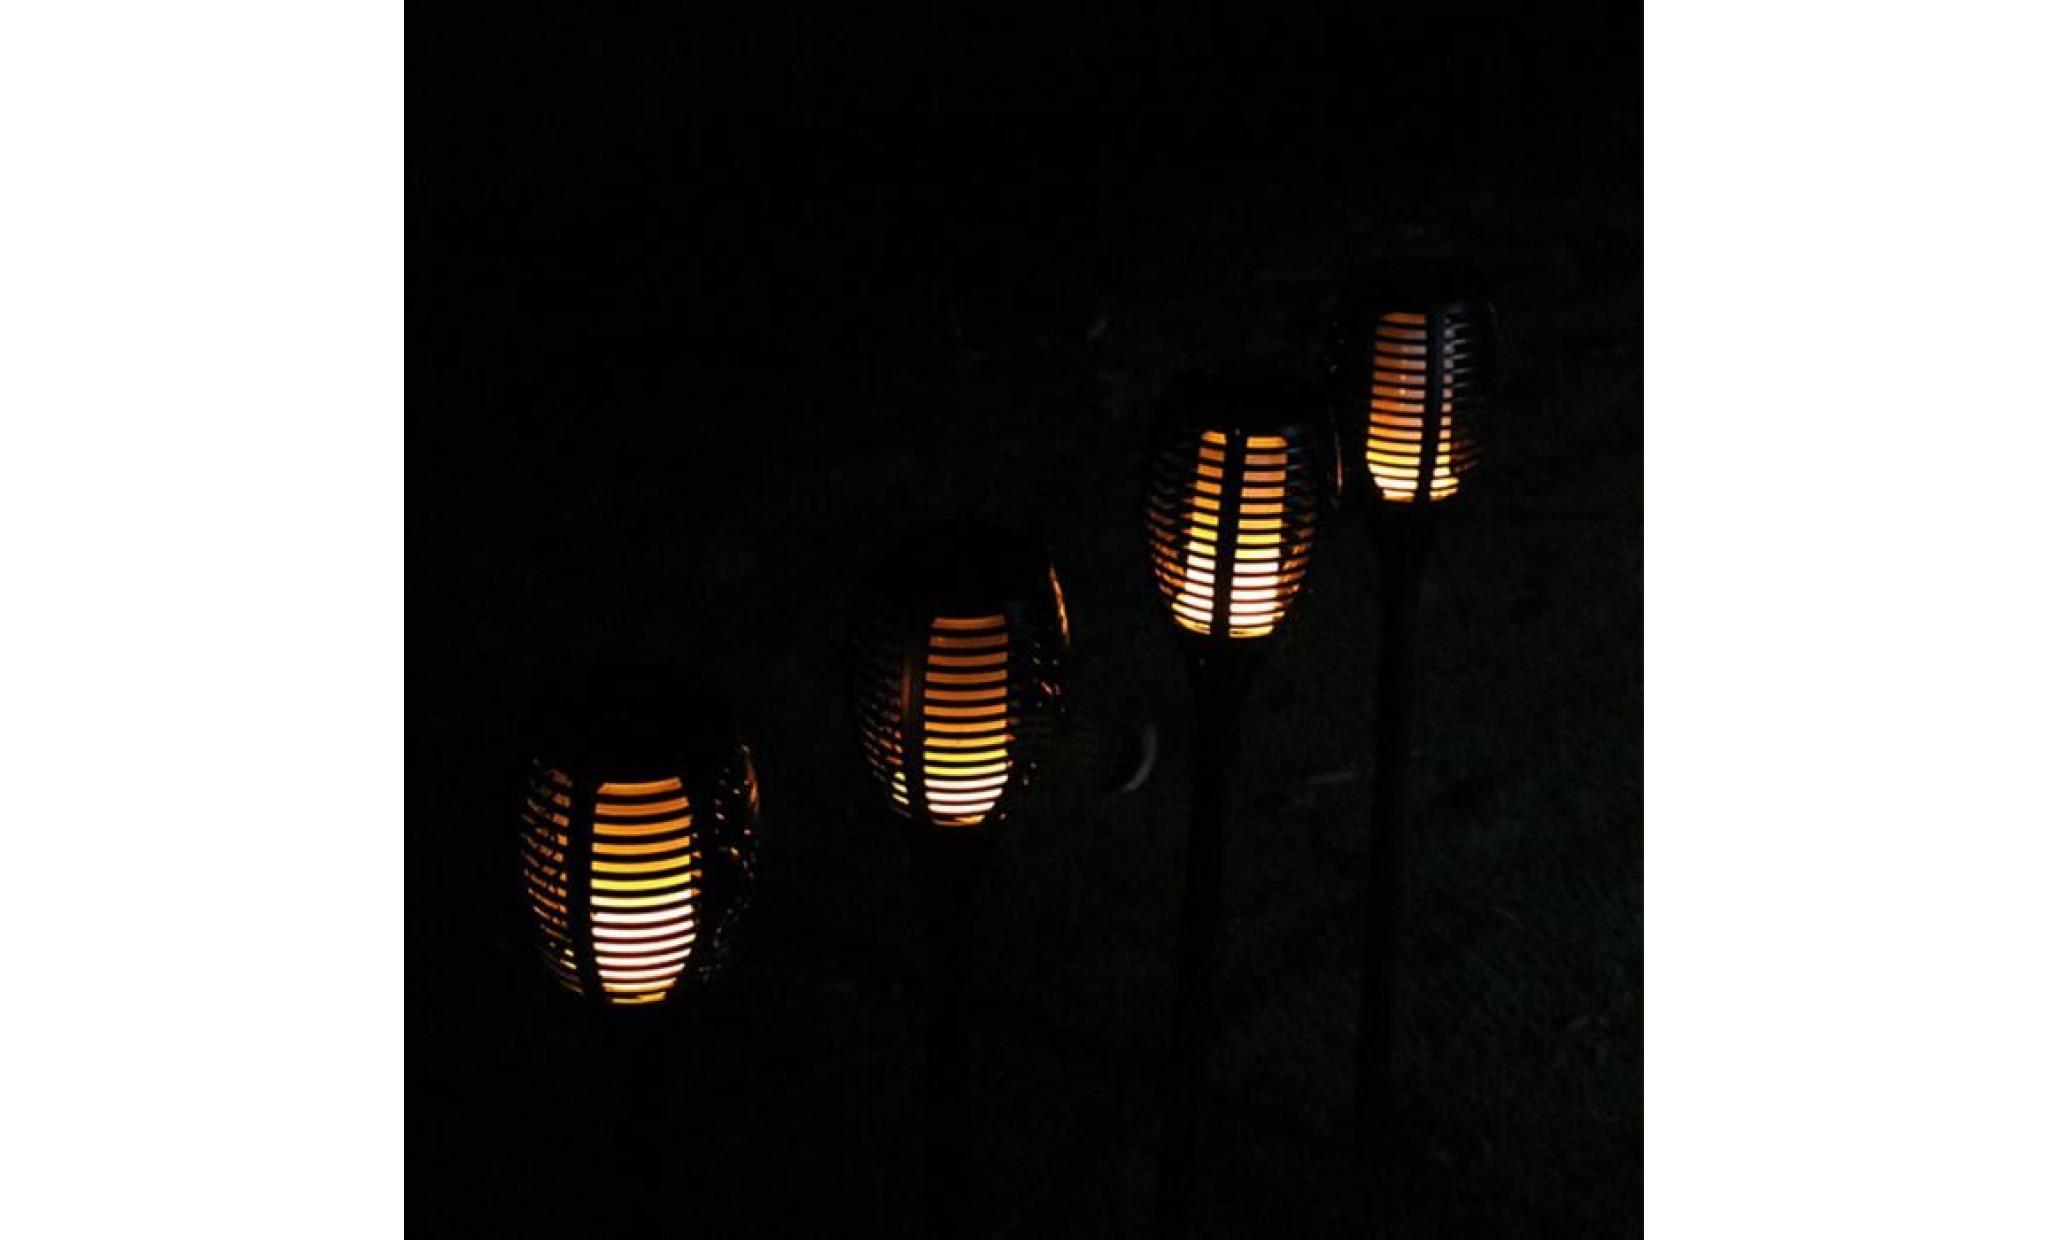 borne solaire 1 pcs solaire extérieure imperméable À l'eau lampes de lanterne lamp pathways yard patio #si 110 pas cher